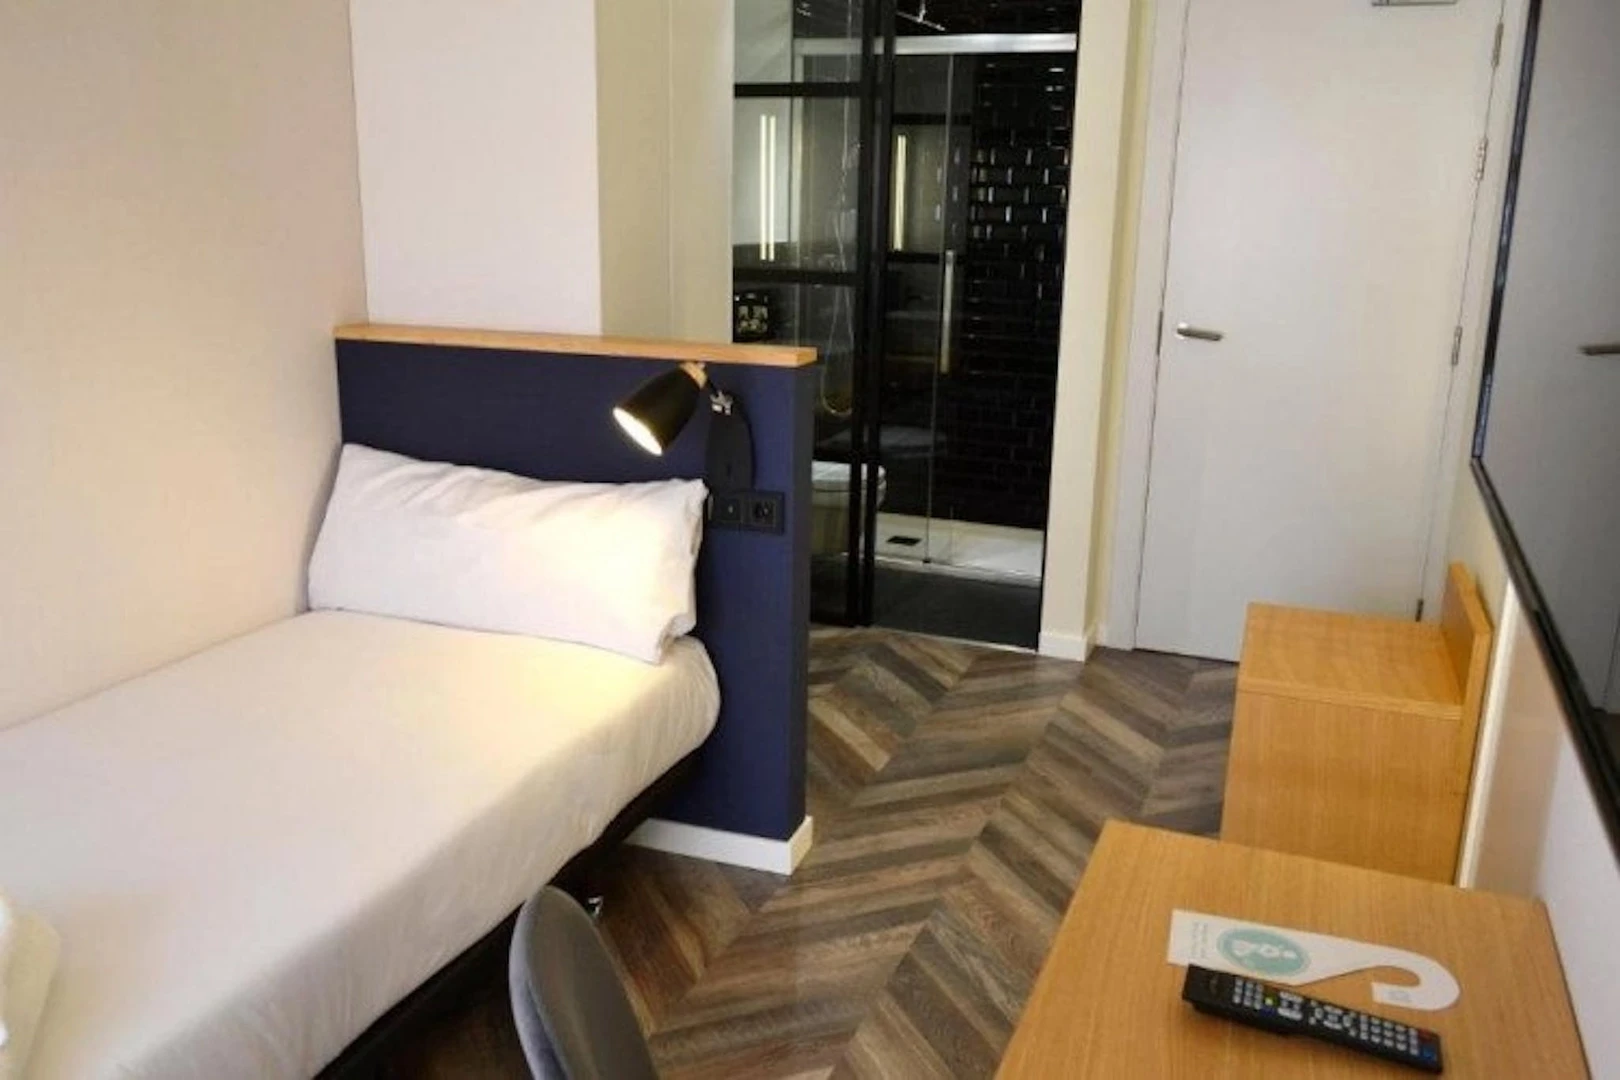 A Coruña içinde 3 yatak odalı konaklama